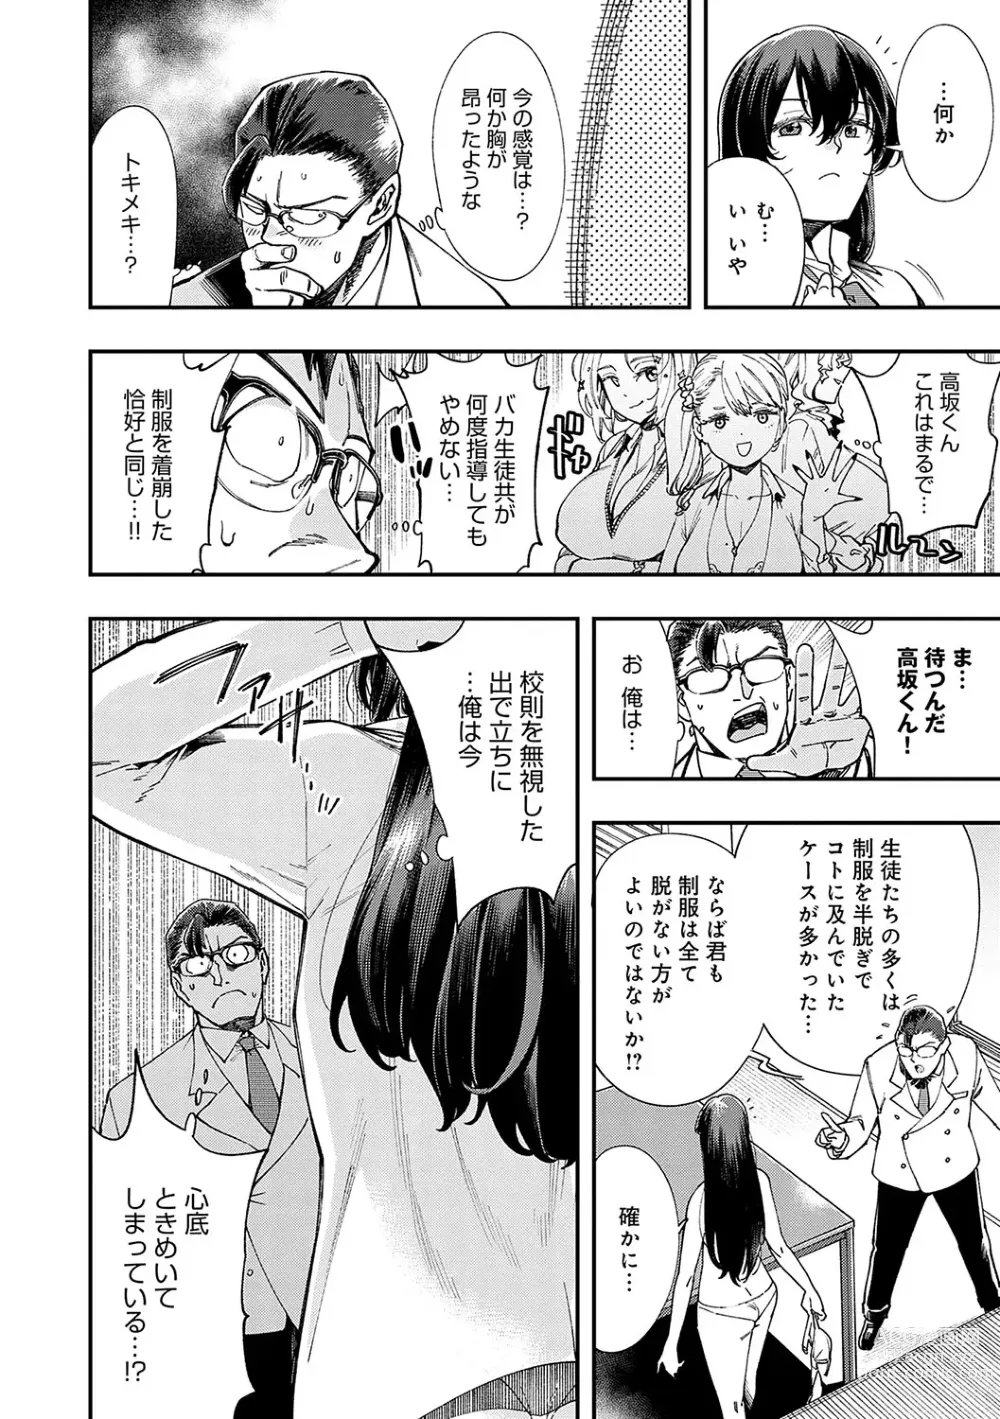 Page 15 of manga Kashikoi Oppai